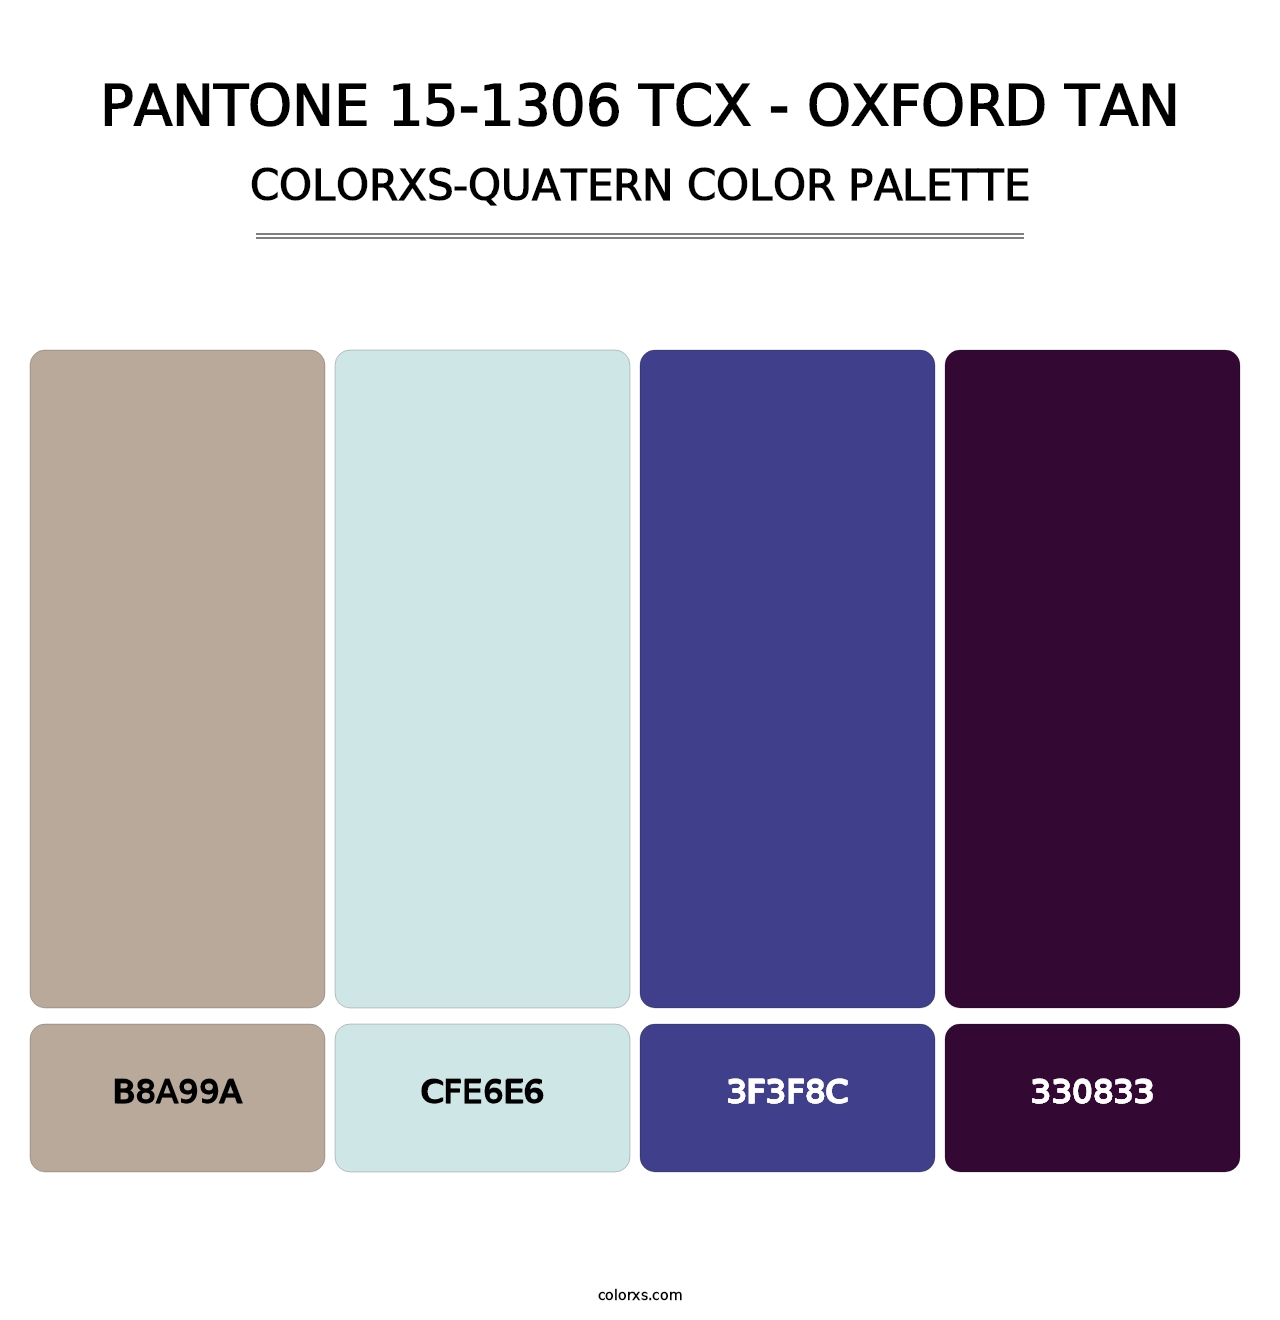 PANTONE 15-1306 TCX - Oxford Tan - Colorxs Quatern Palette